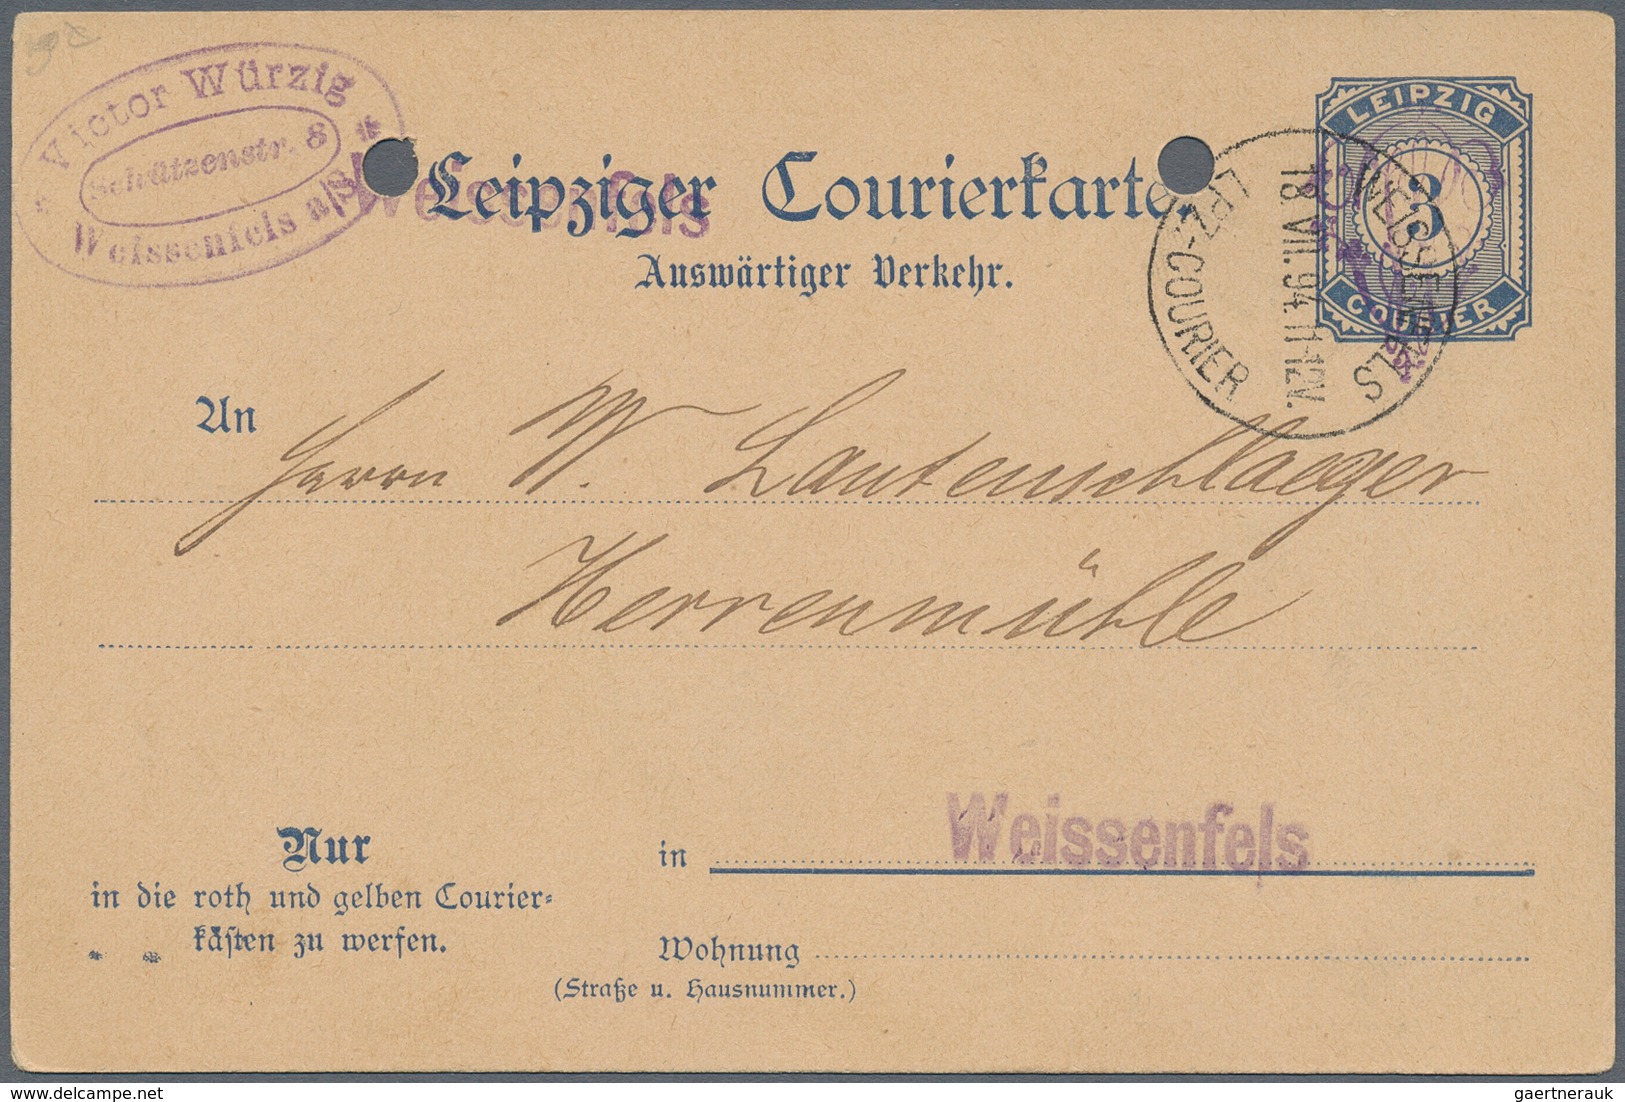 Deutsches Reich - Privatpost (Stadtpost): WEISSENFELS, Courier, Courierkarte 3 a. 2 1/2 Pfg. (P5), s